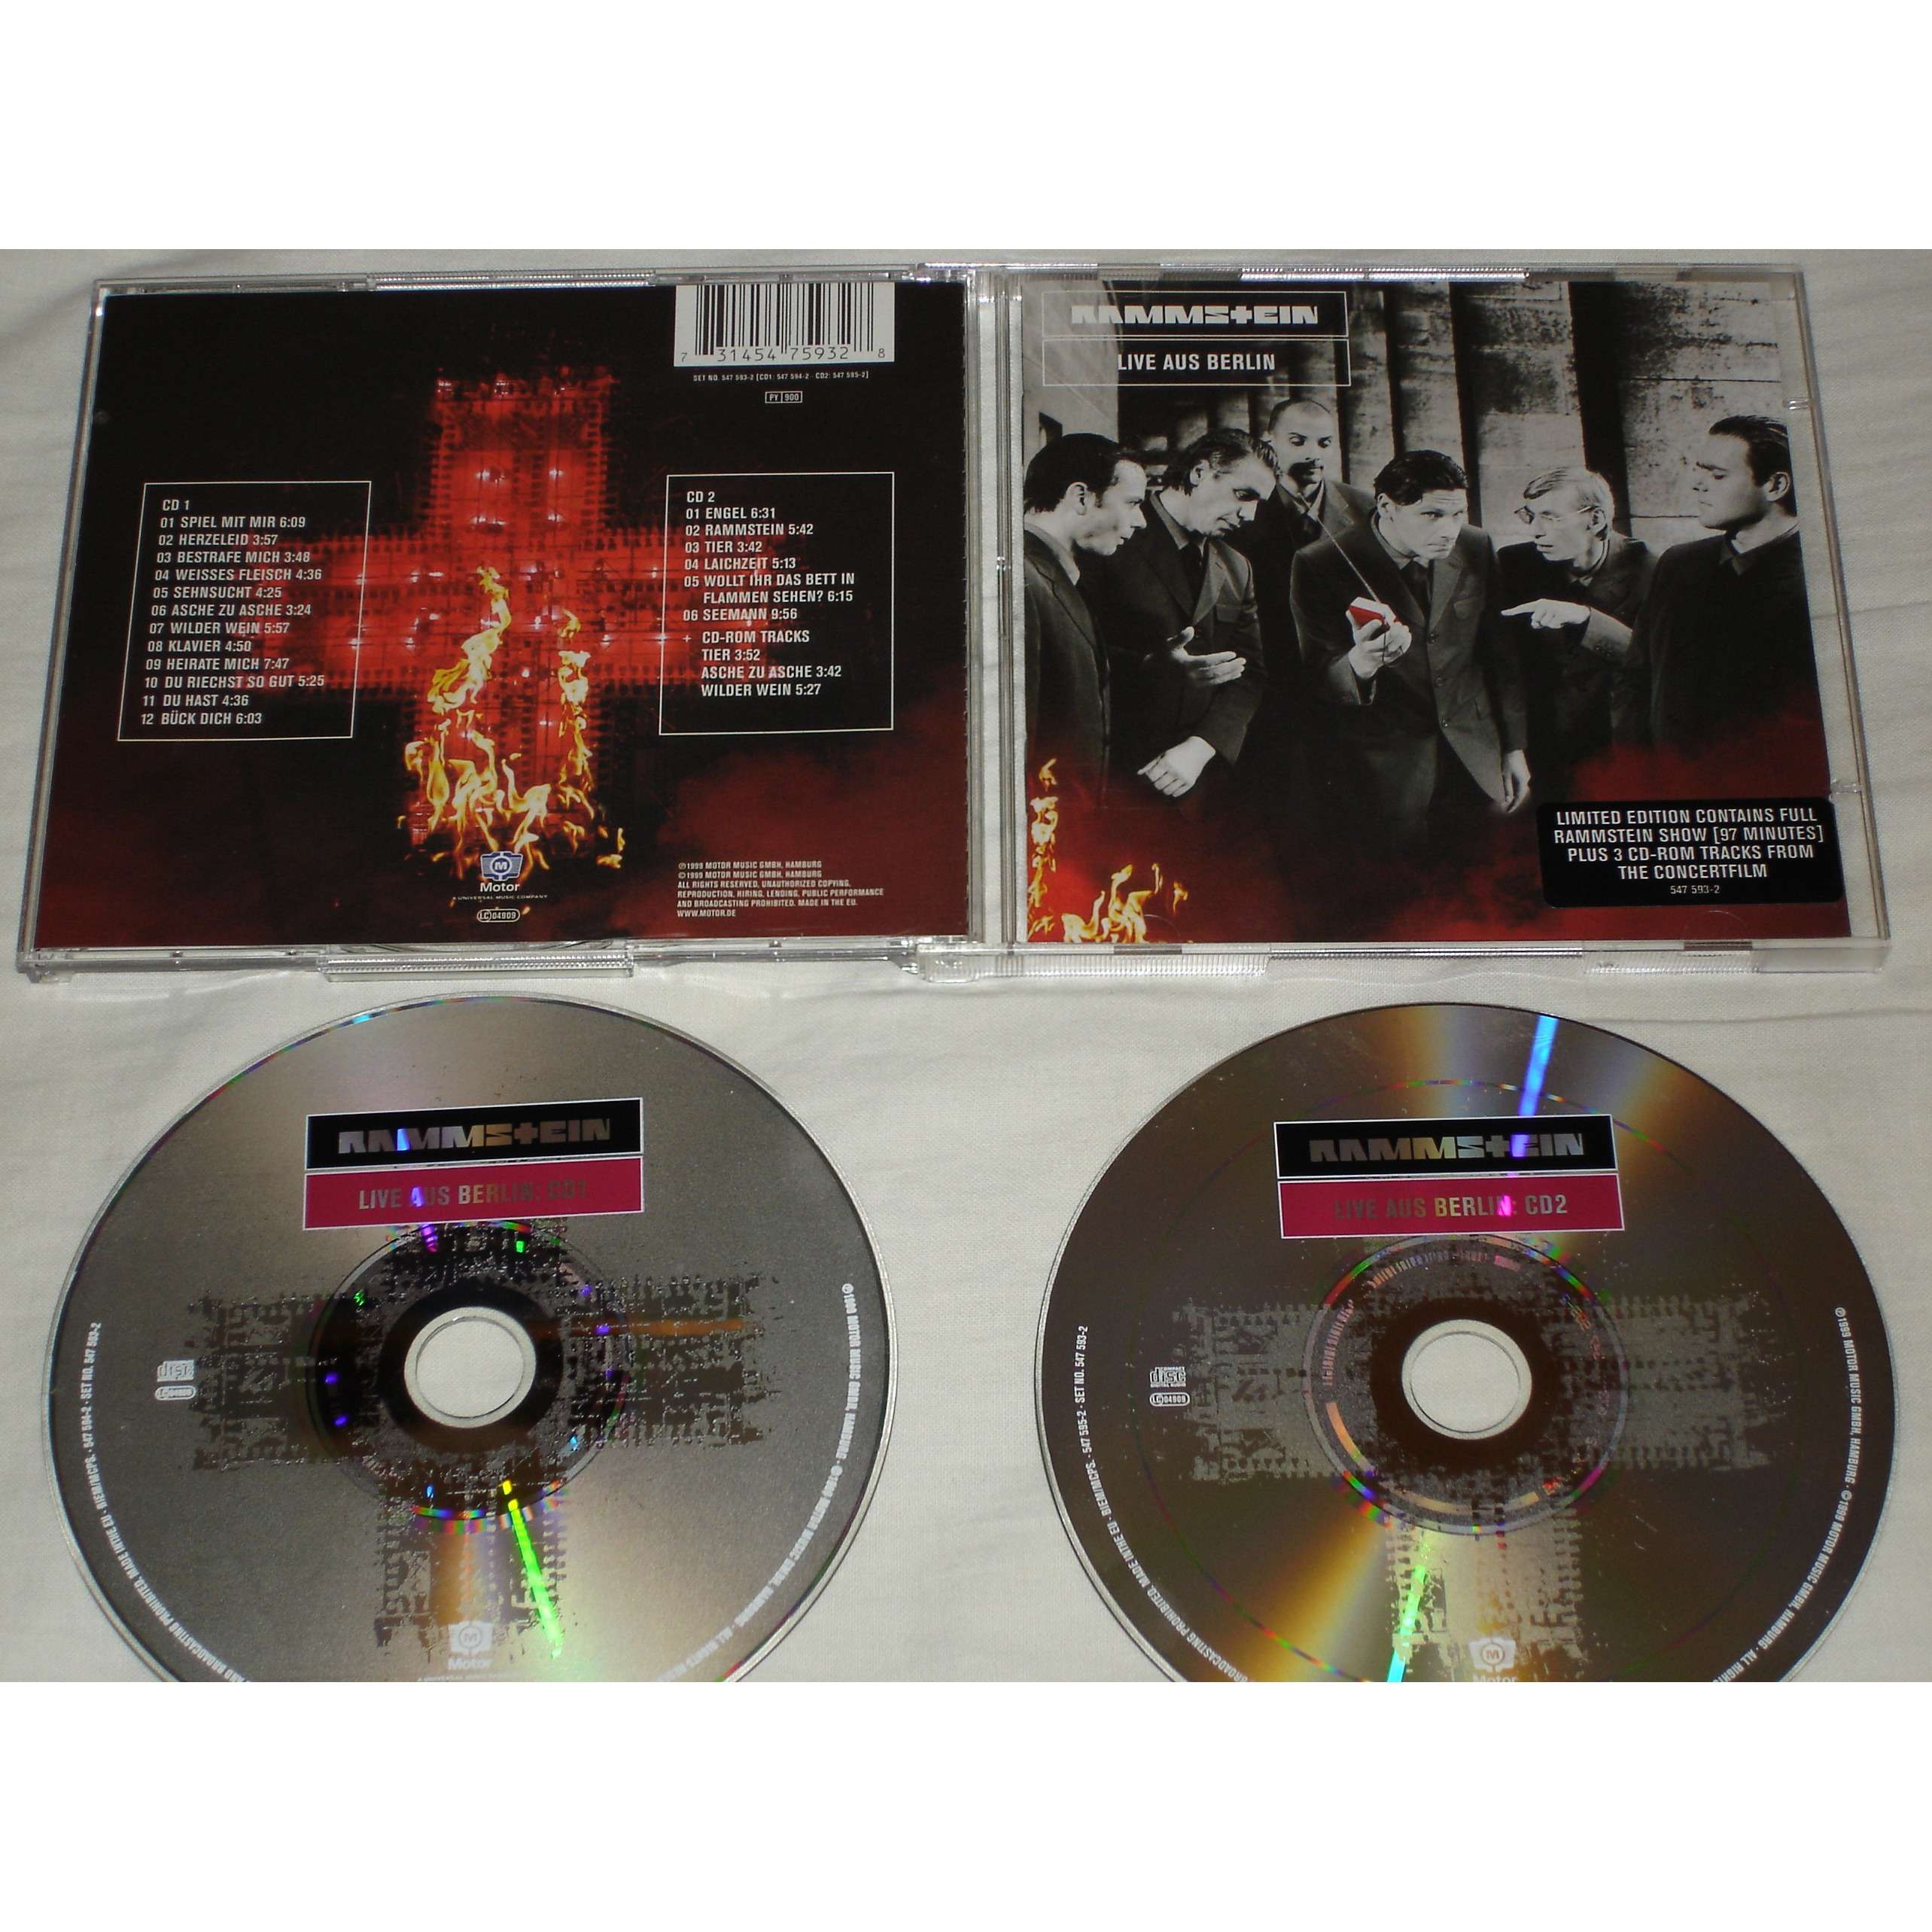 Live aus berlin 2 cd's von Rammstein, CD x 2 bei avefenixrecords